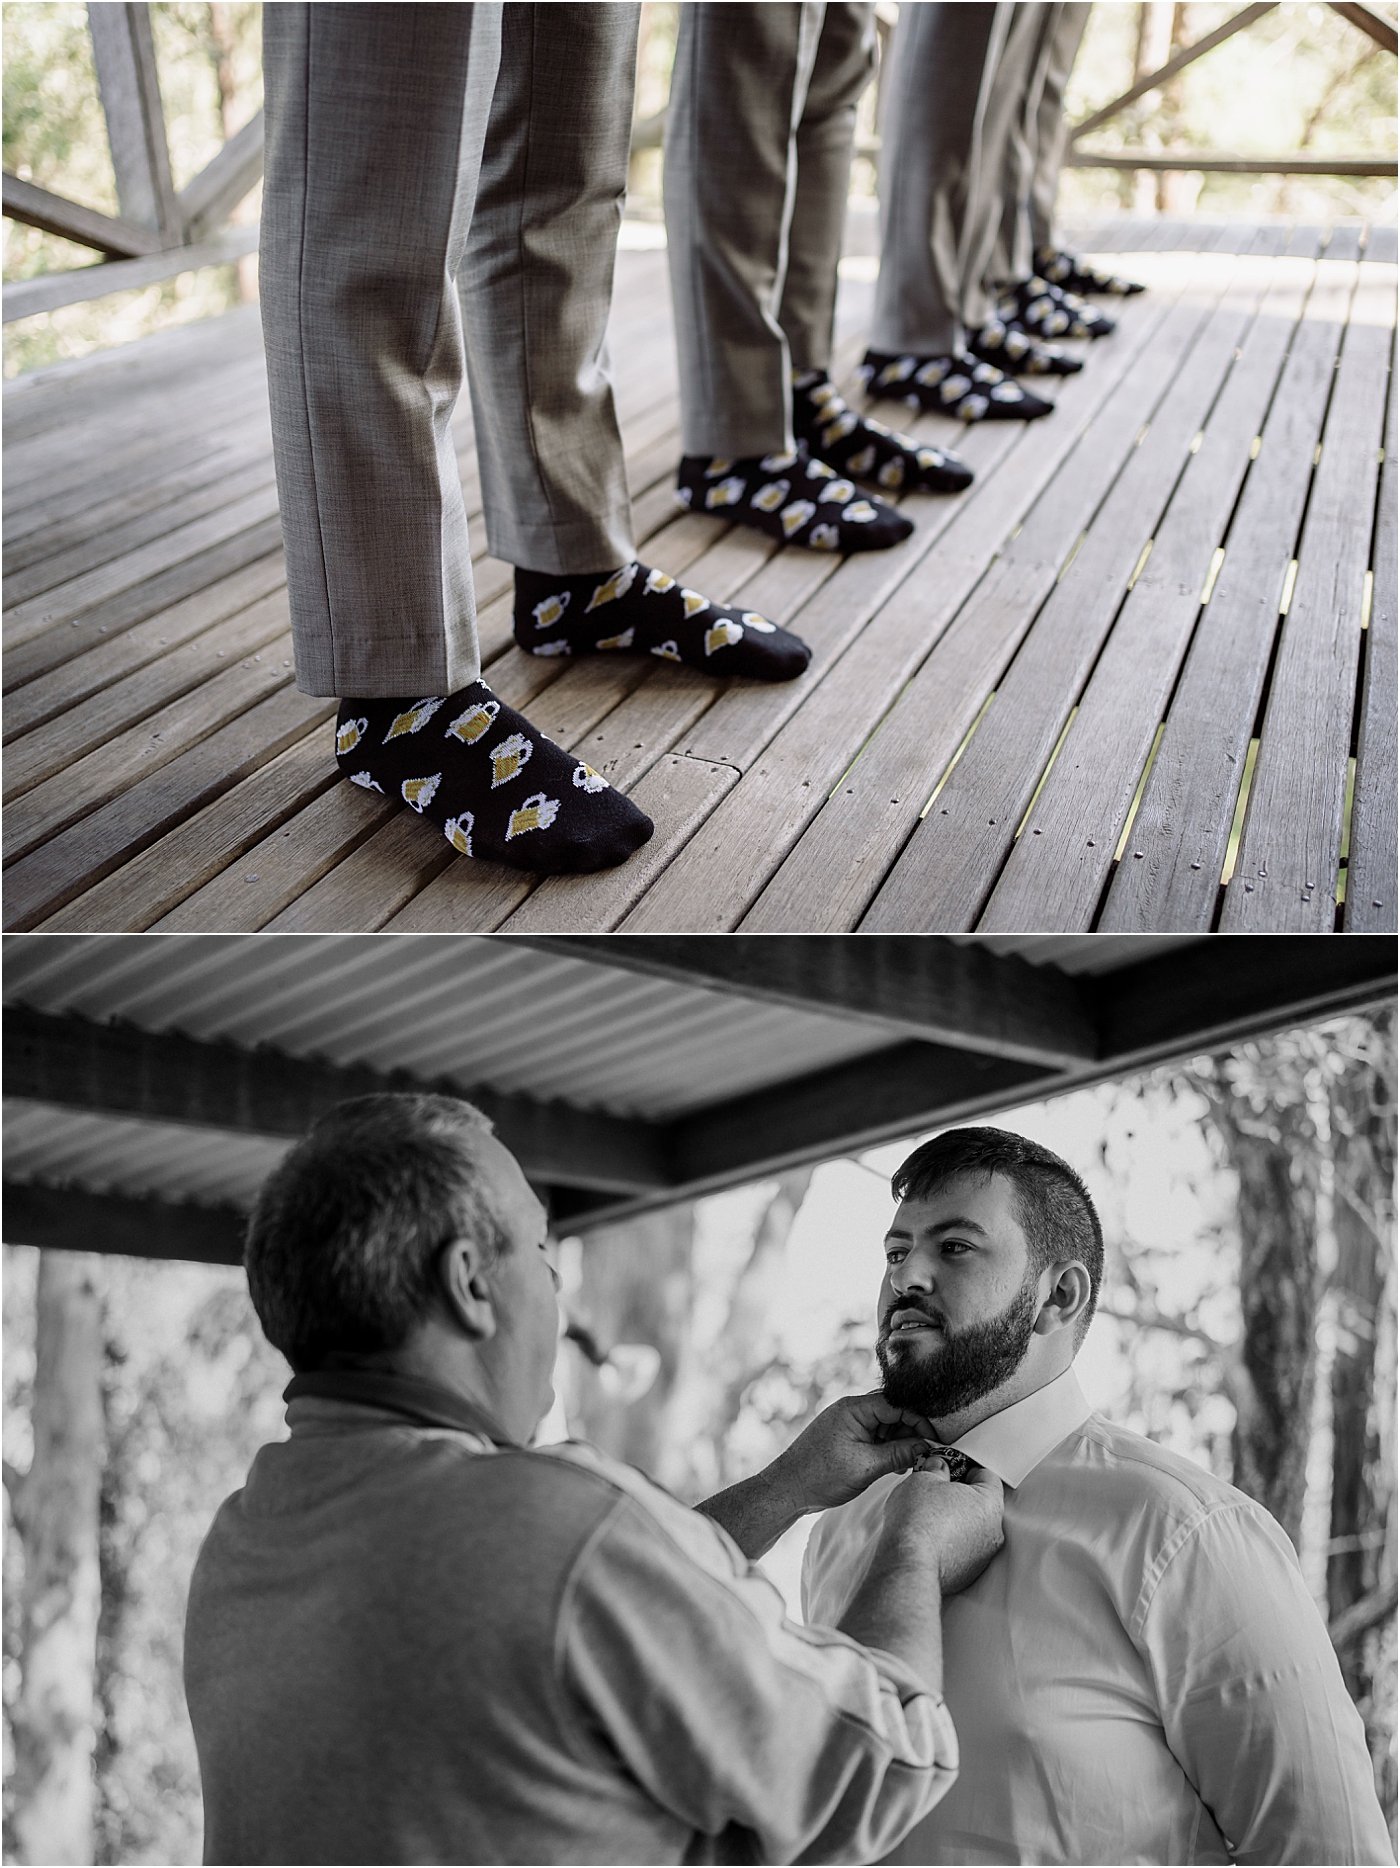 Groomsmen wearing matching beer socks, and groom getting his shirt adjusted by groomsmen